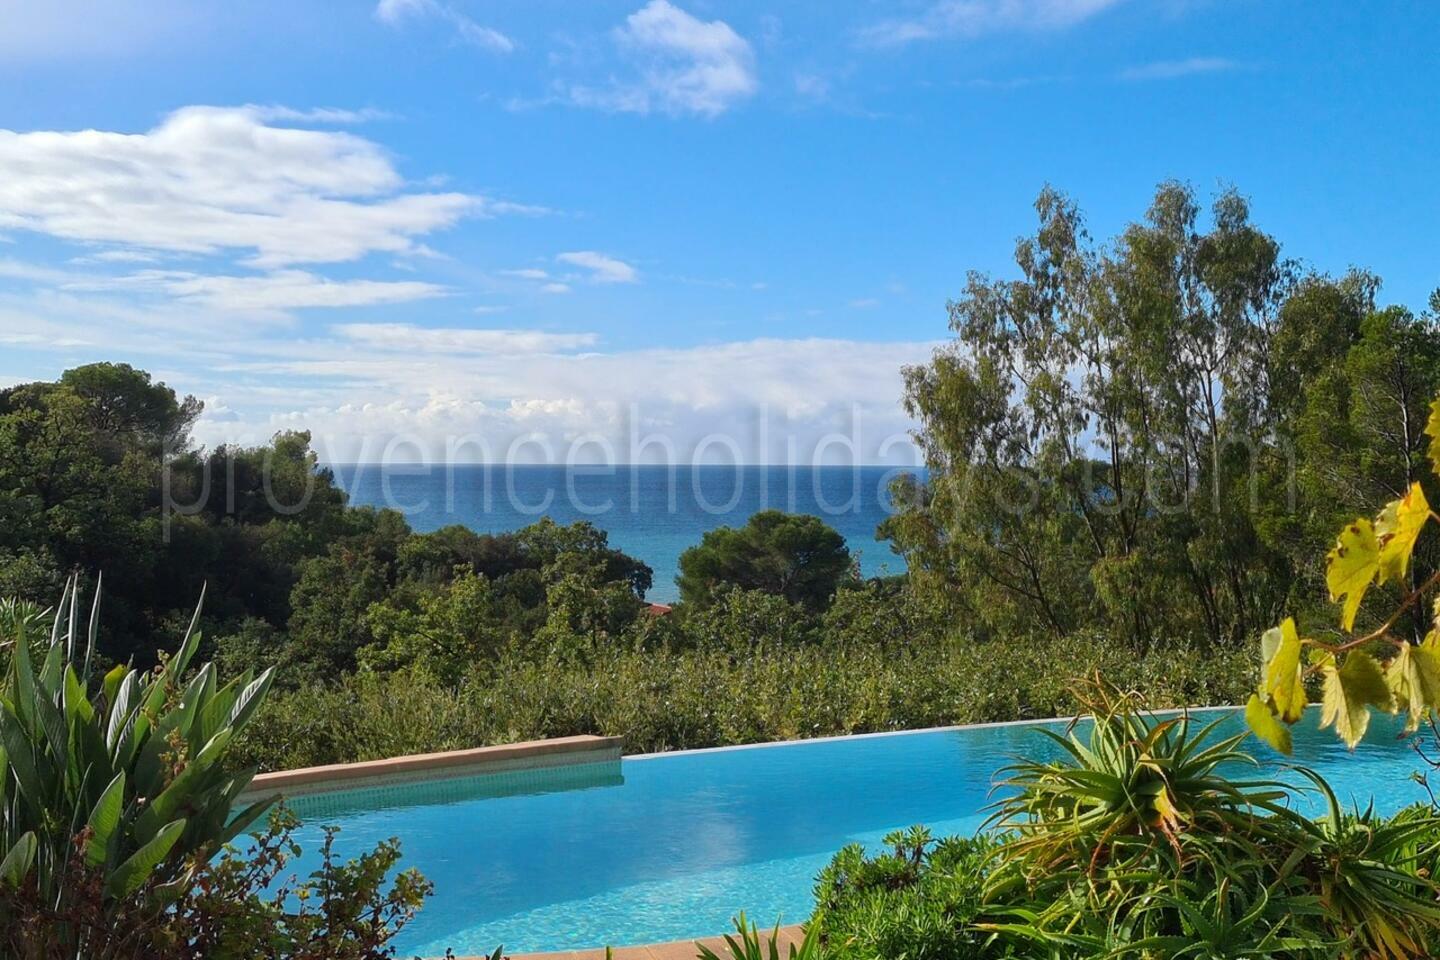 Schitterende woning met zeezicht, overloopzwembad en directe toegang tot het strand 1 - Villa Cassiopée: Villa: Pool